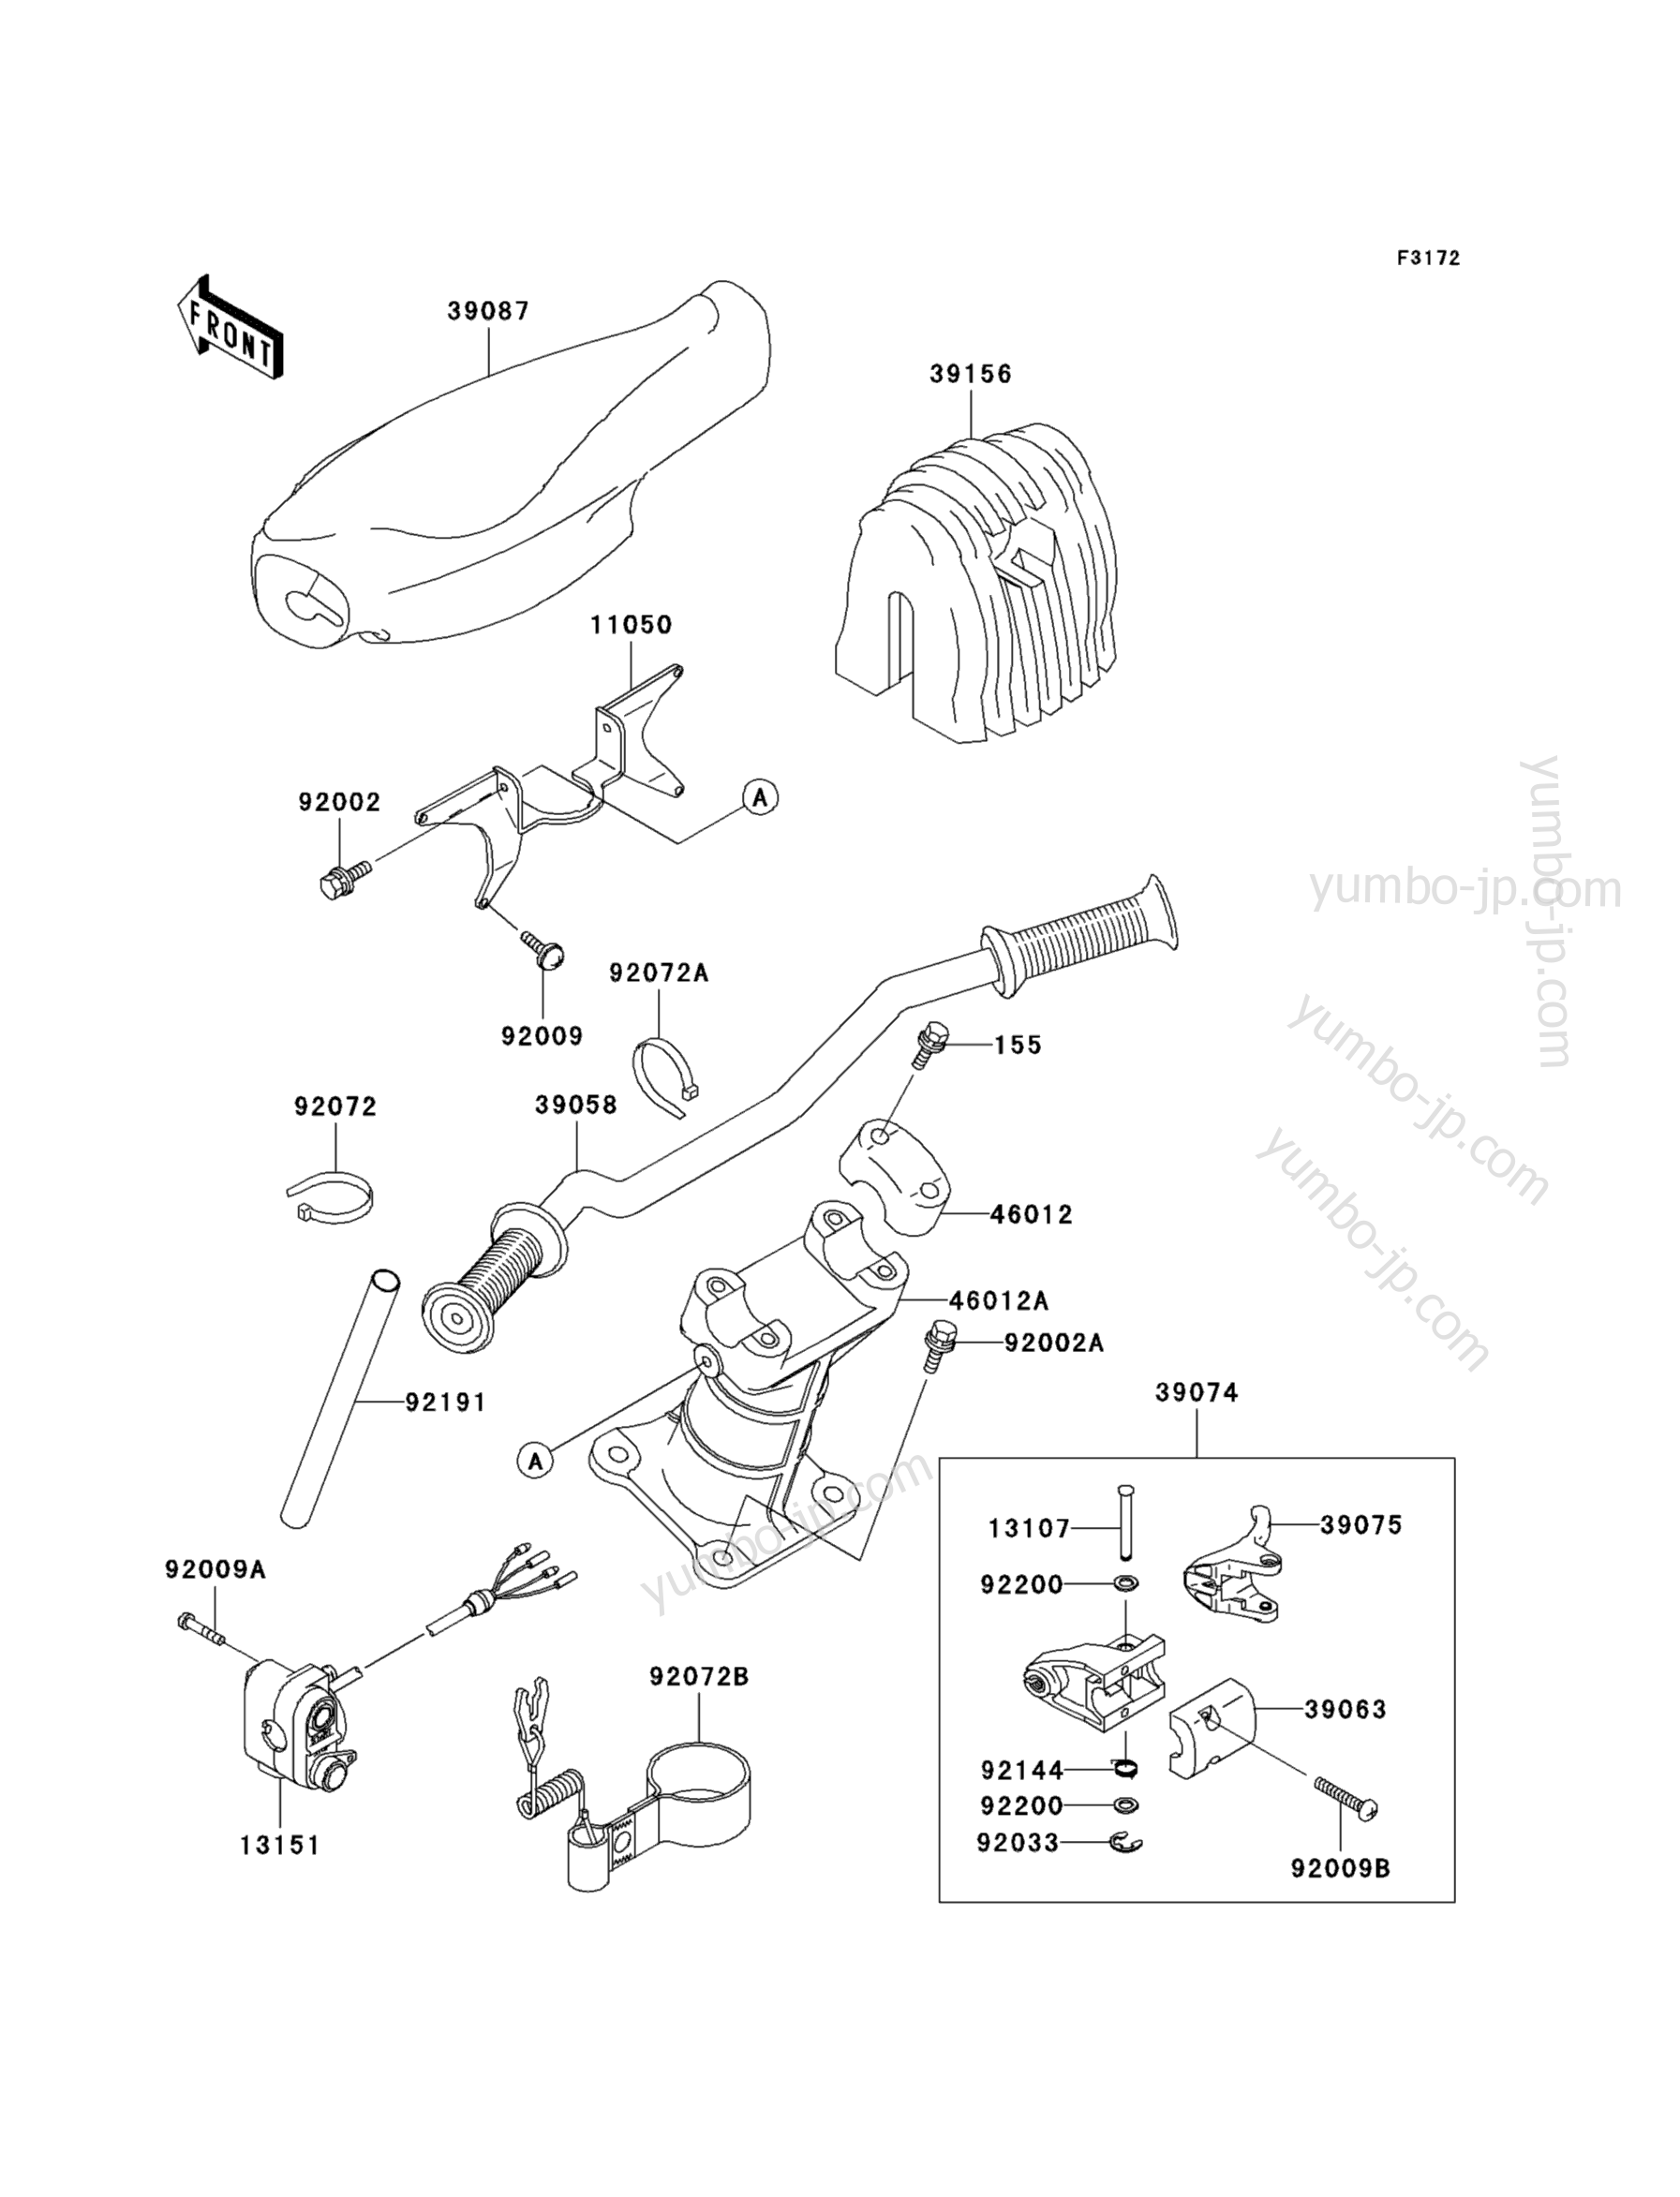 Румпель (рукоятка управления) для гидроциклов KAWASAKI JET SKI 900 STS (JT900-B3) 2001 г.